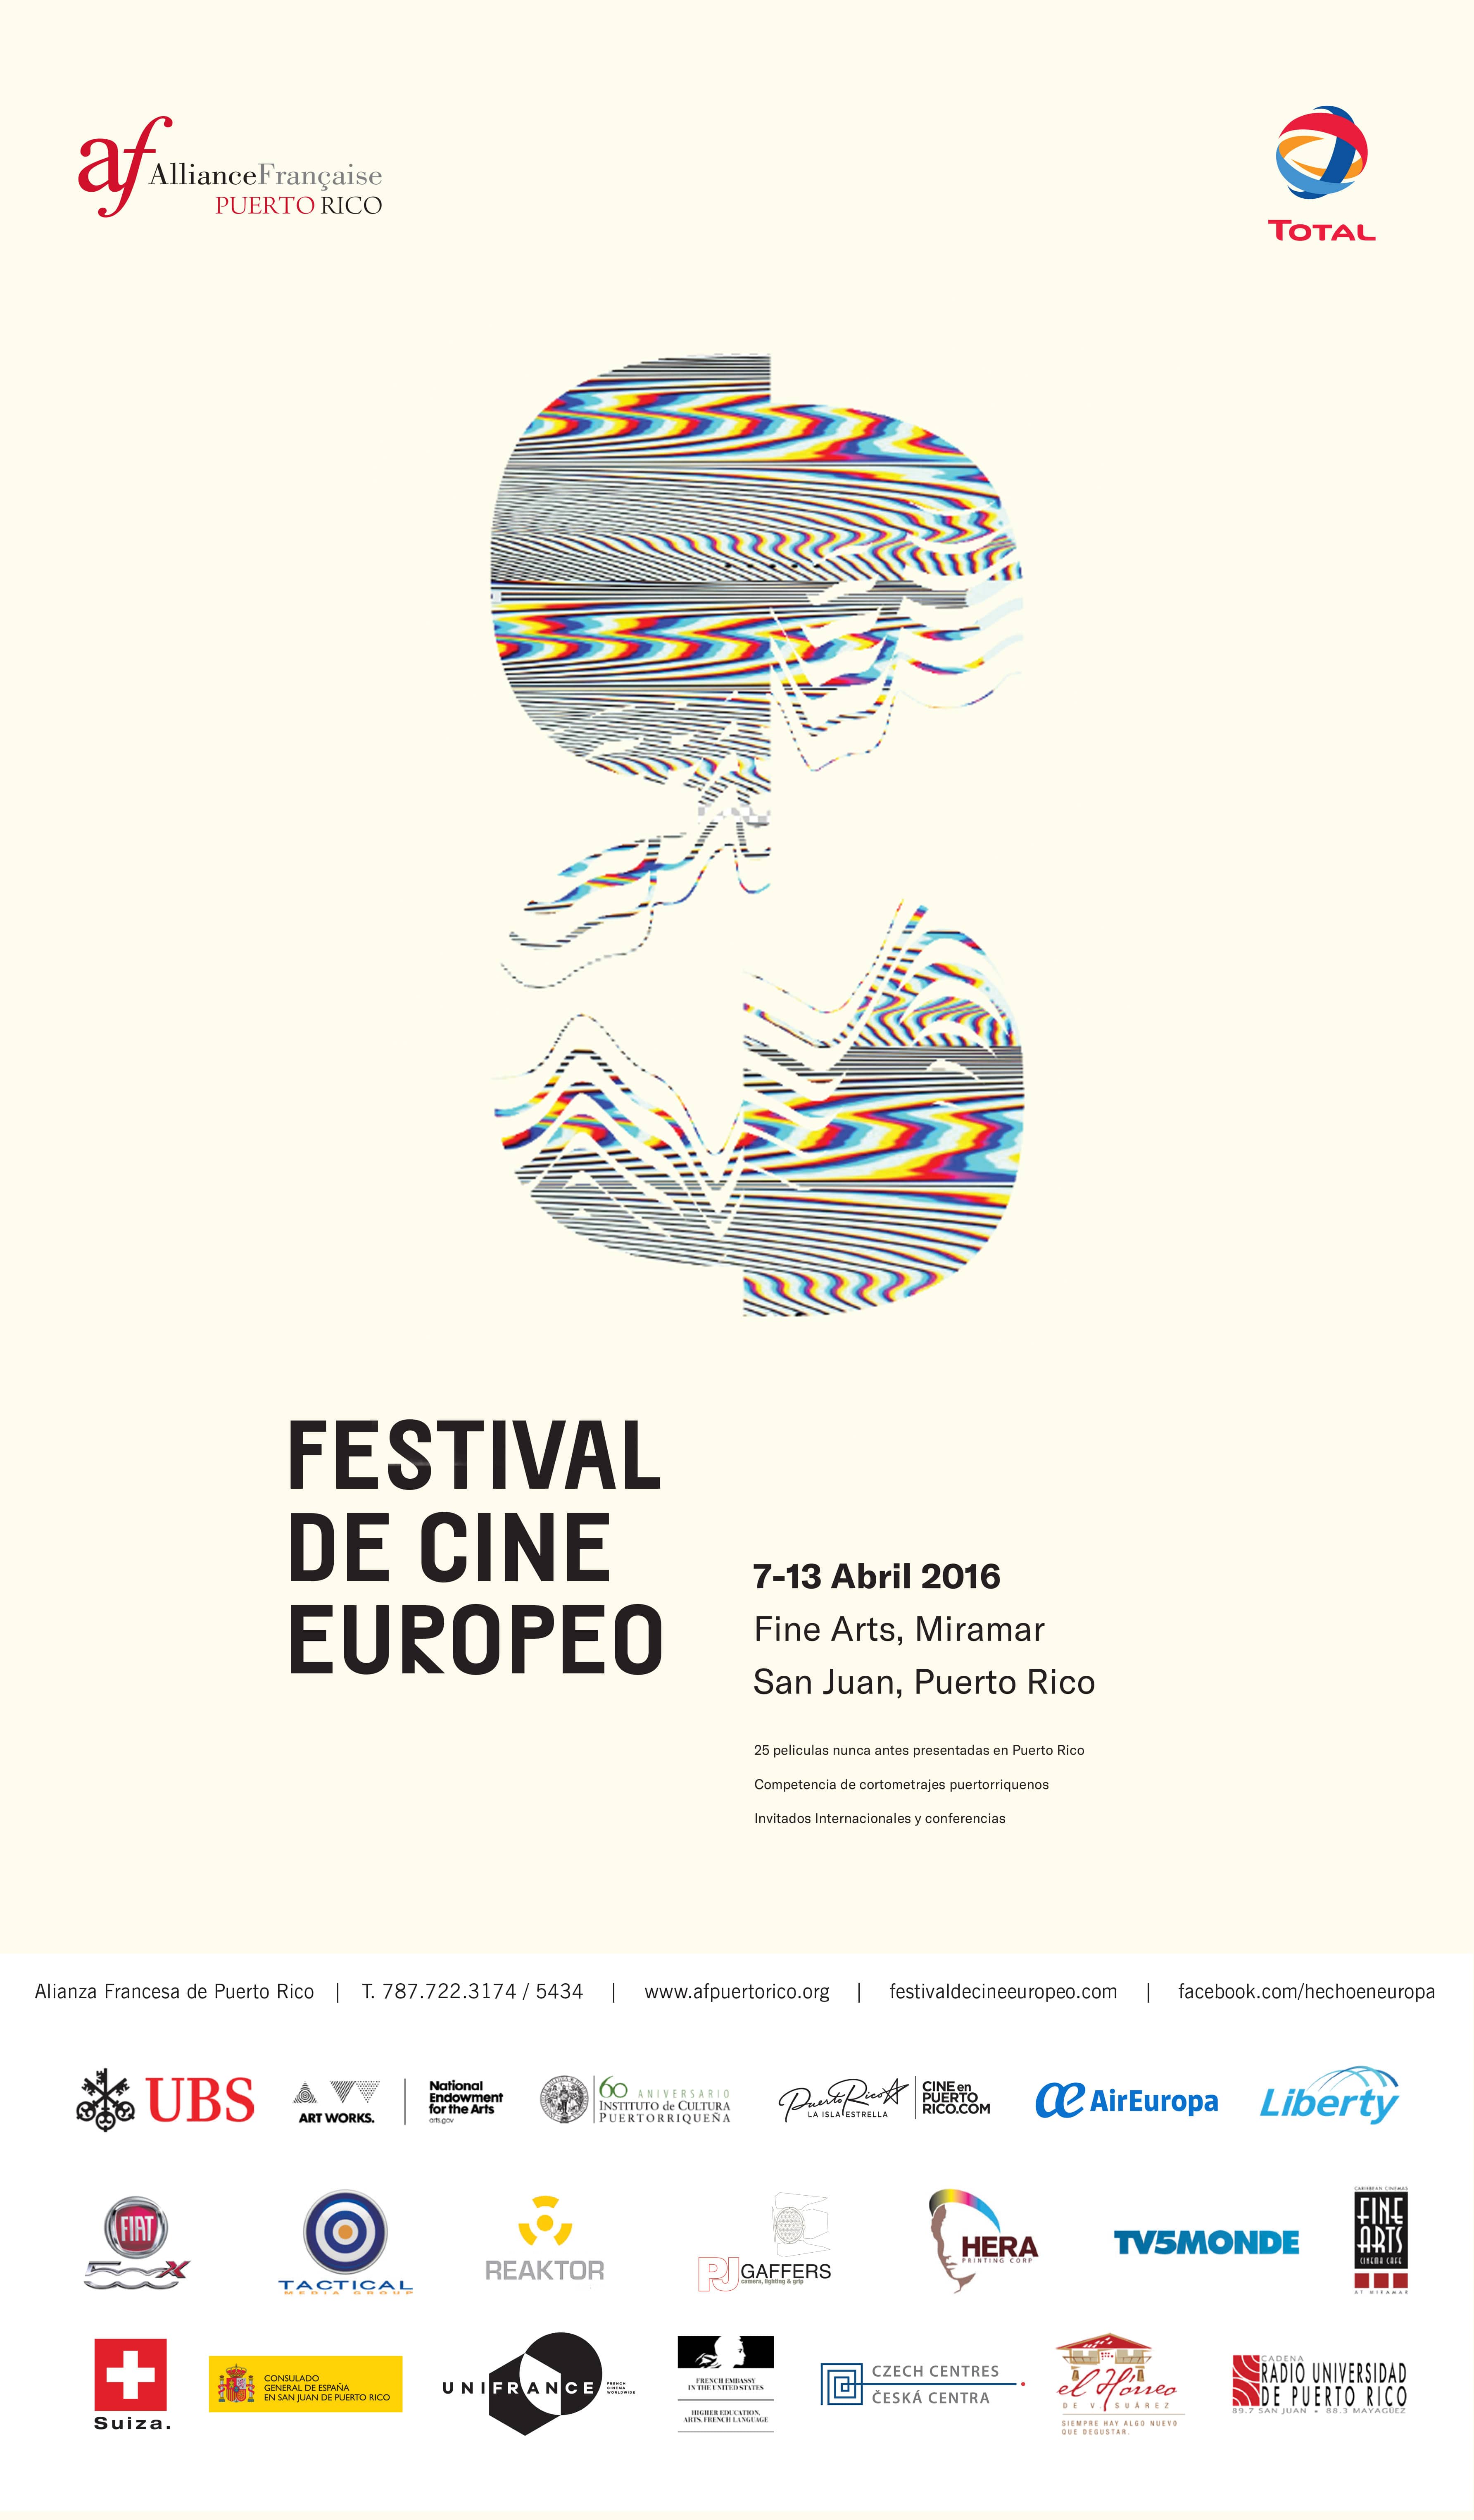 Celebra con nosotros el festival de cine europeo